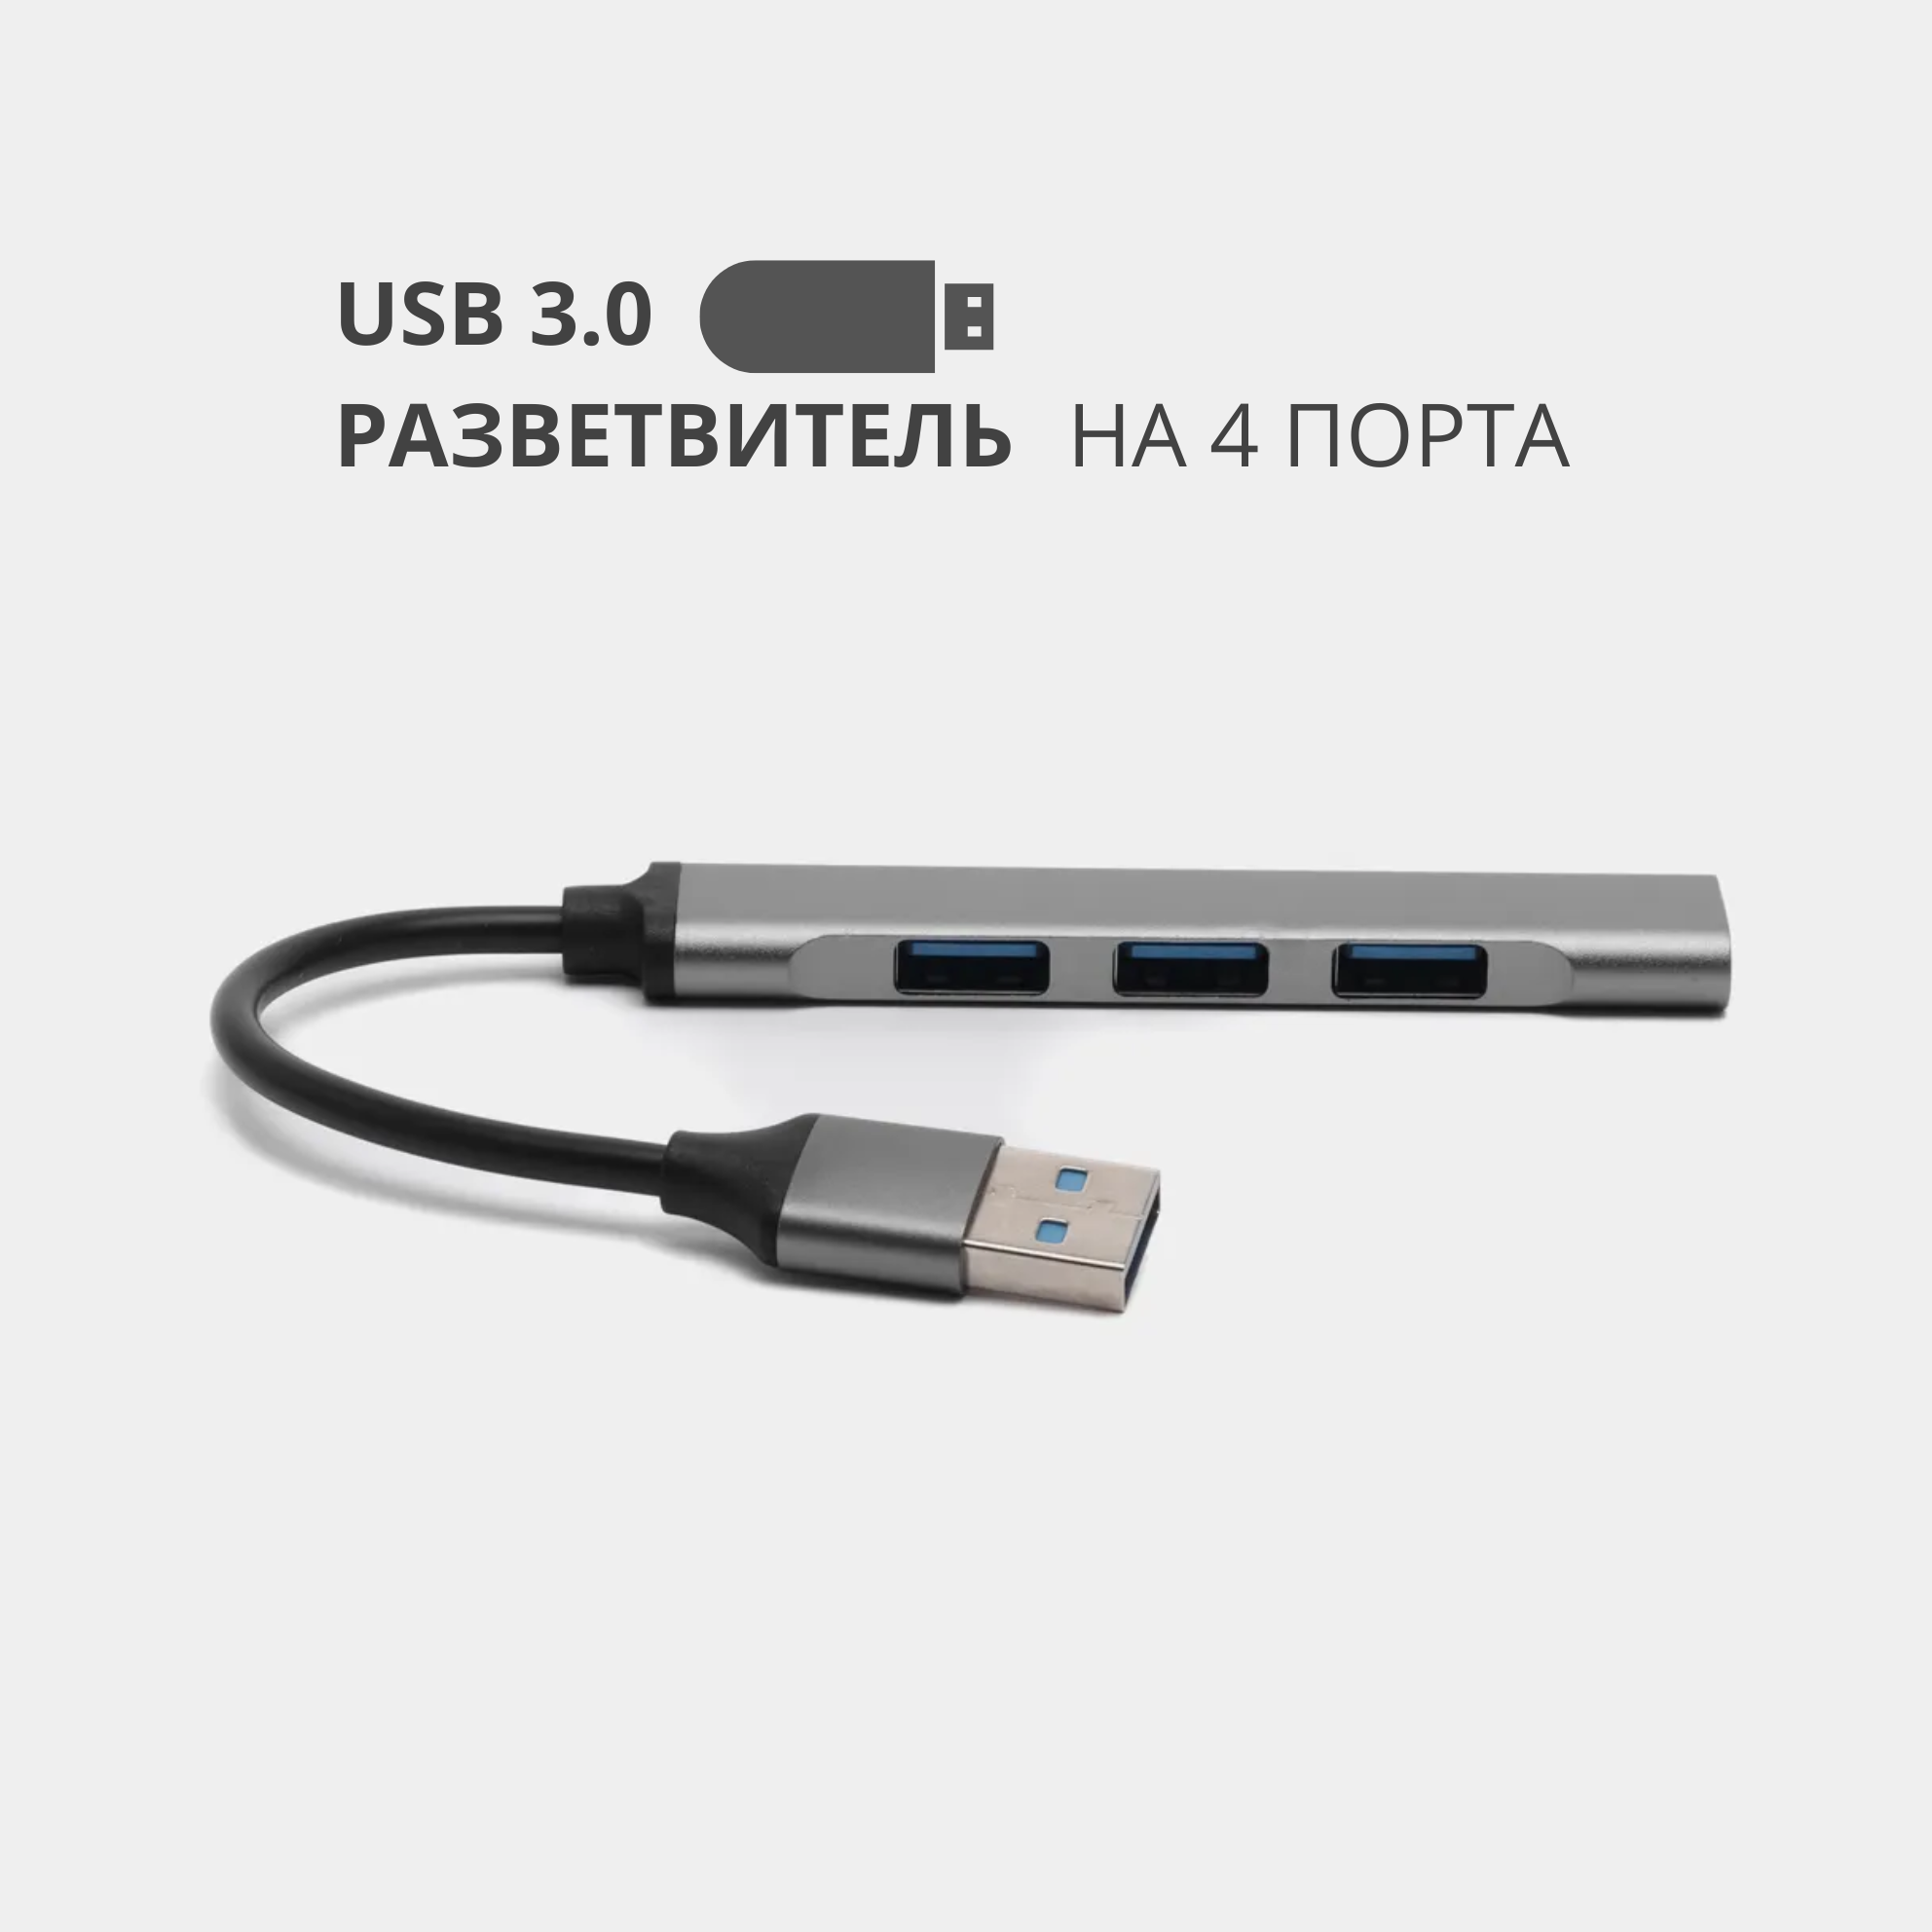 USB 3.0 - хаб разветвитель на 4 порта переходник HUB 3.0 концентратор